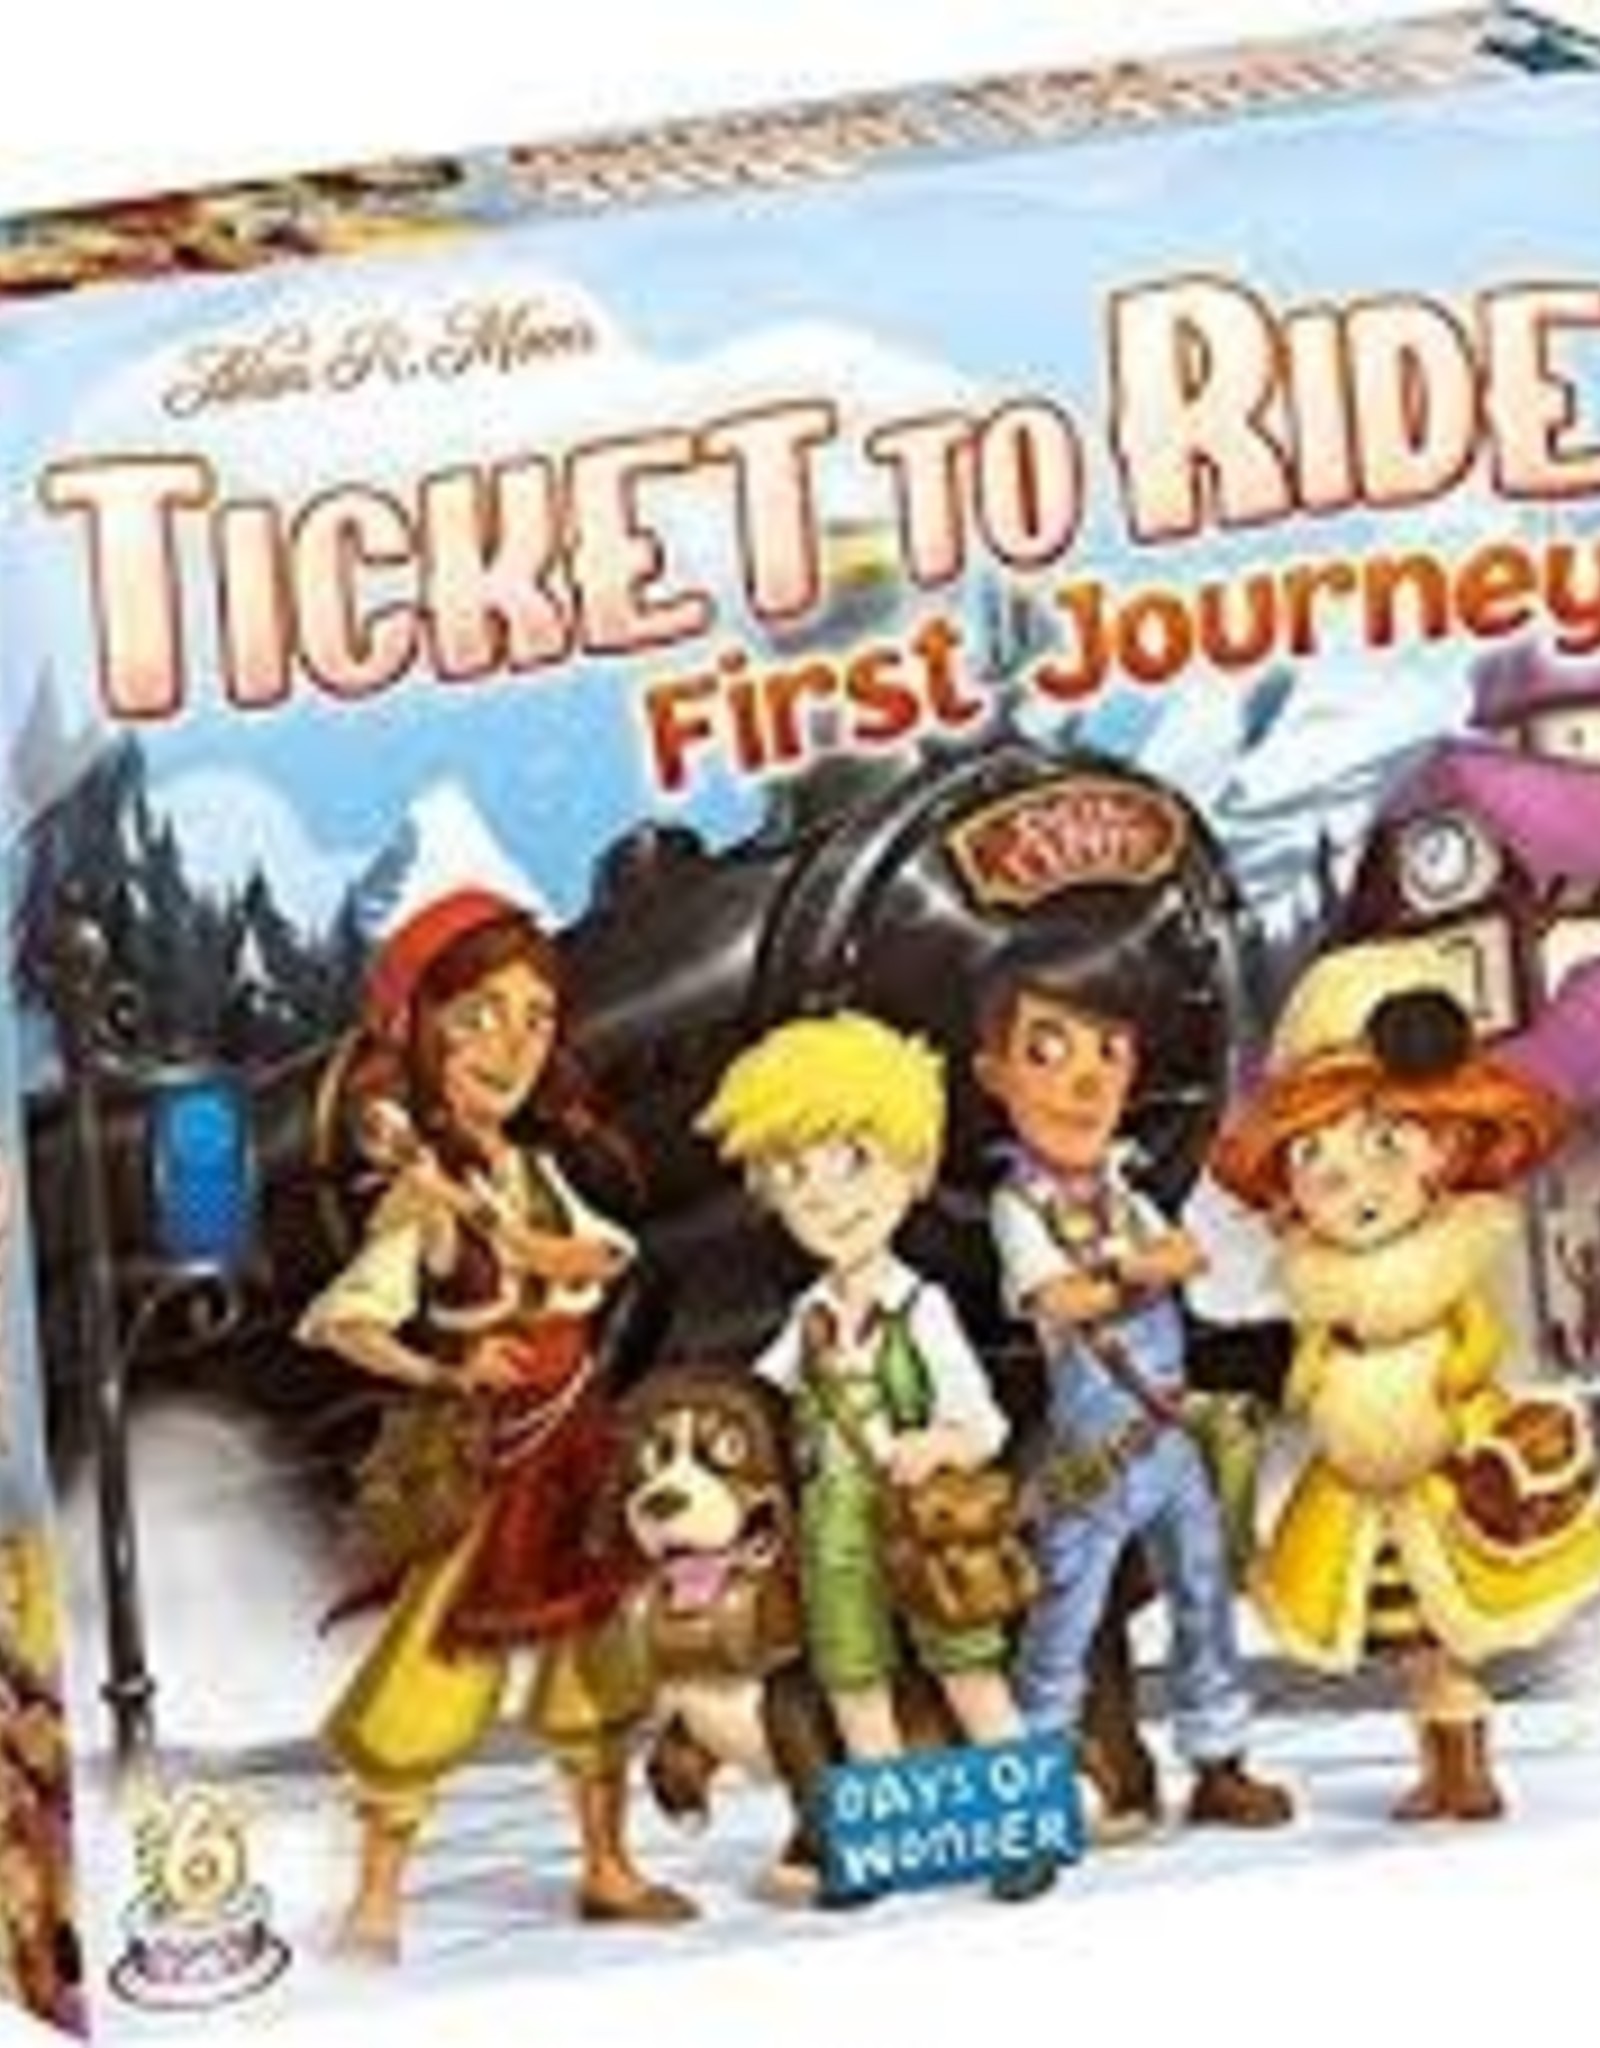 Days of Wonder Ticket to Ride - First Journey (Europe)